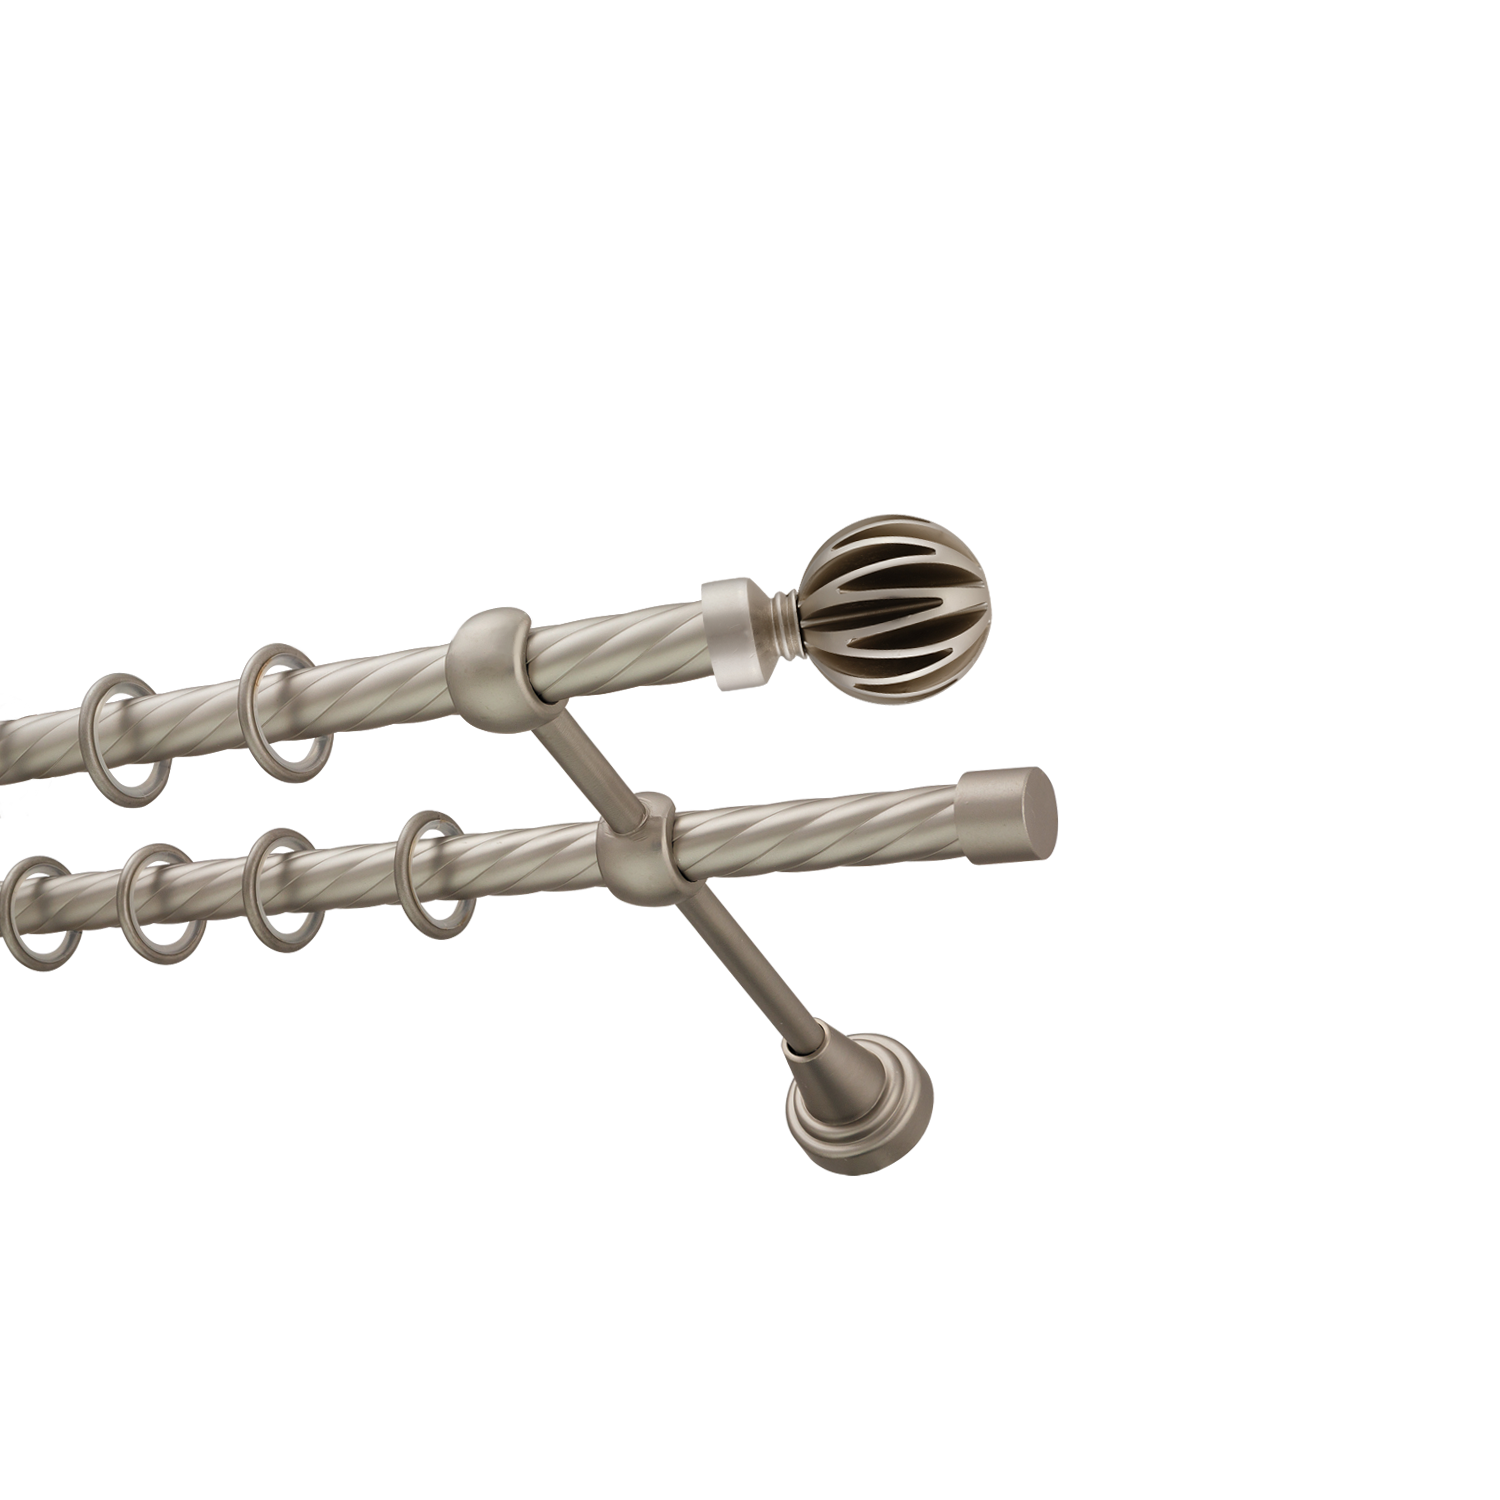 Металлический карниз для штор Шафран, двухрядный 16/16 мм, сталь, витая штанга, длина 180 см